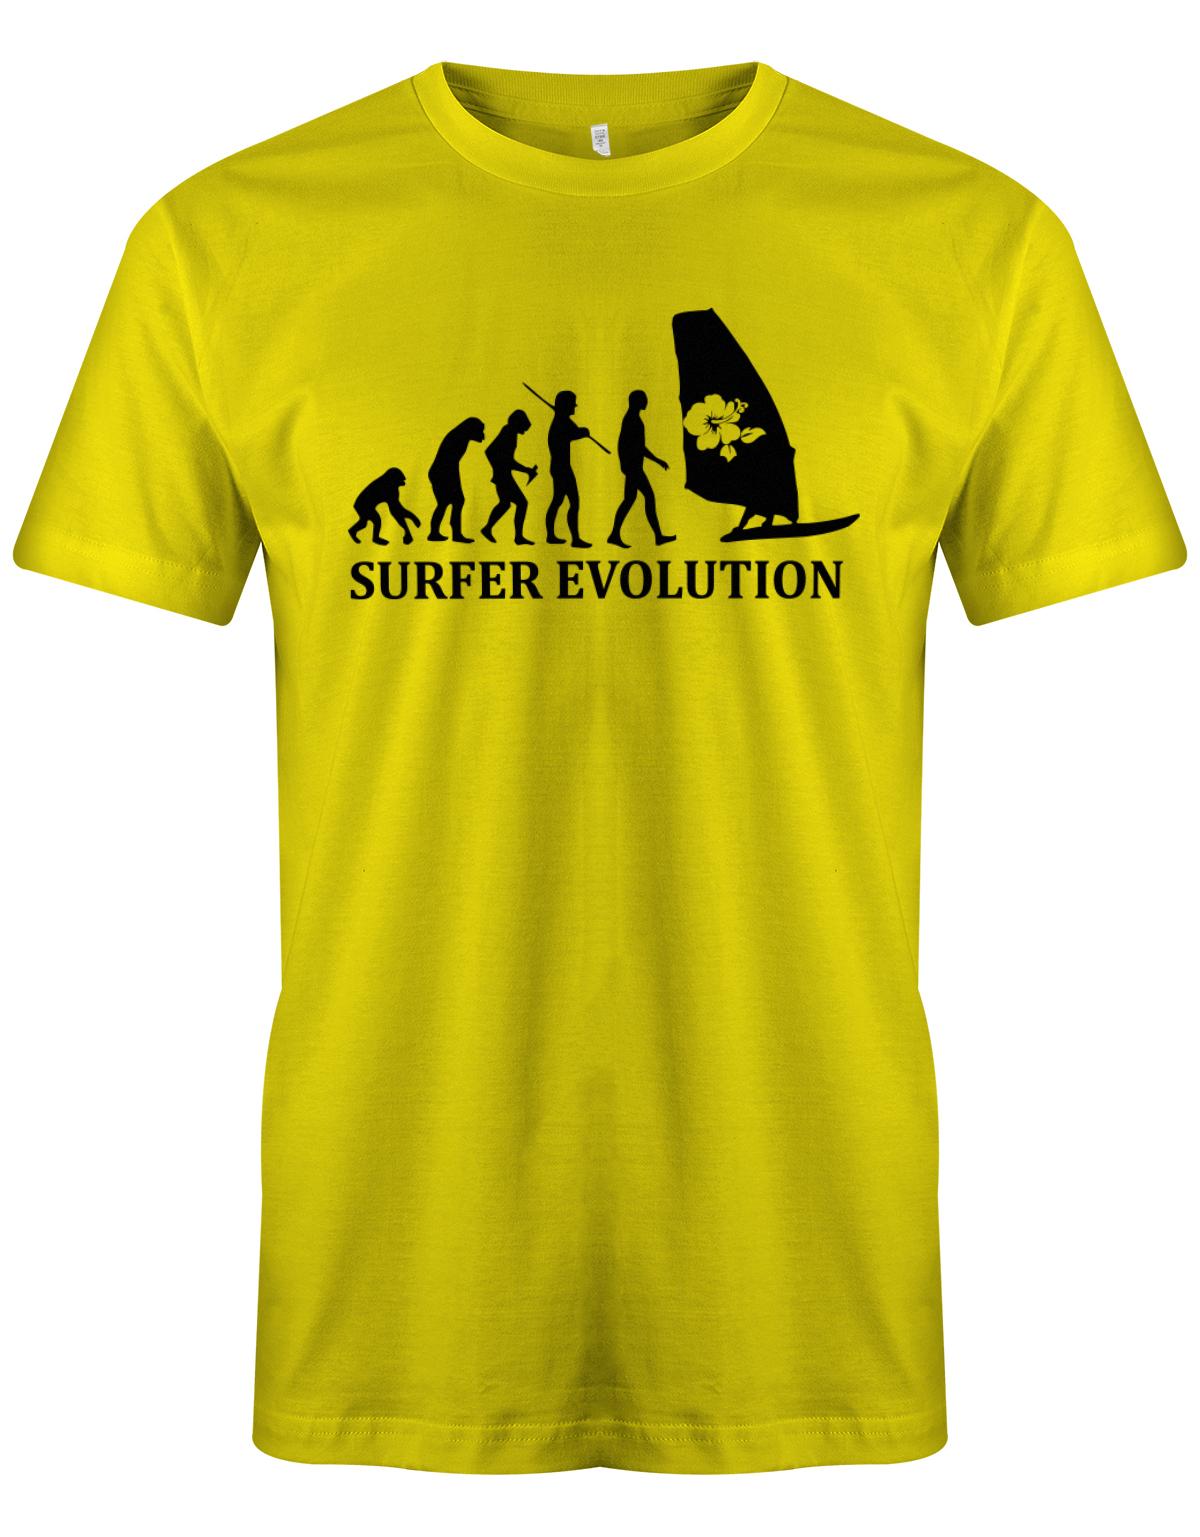 Surfer-Evolution-Surf-Herren-Shirt-Gelb